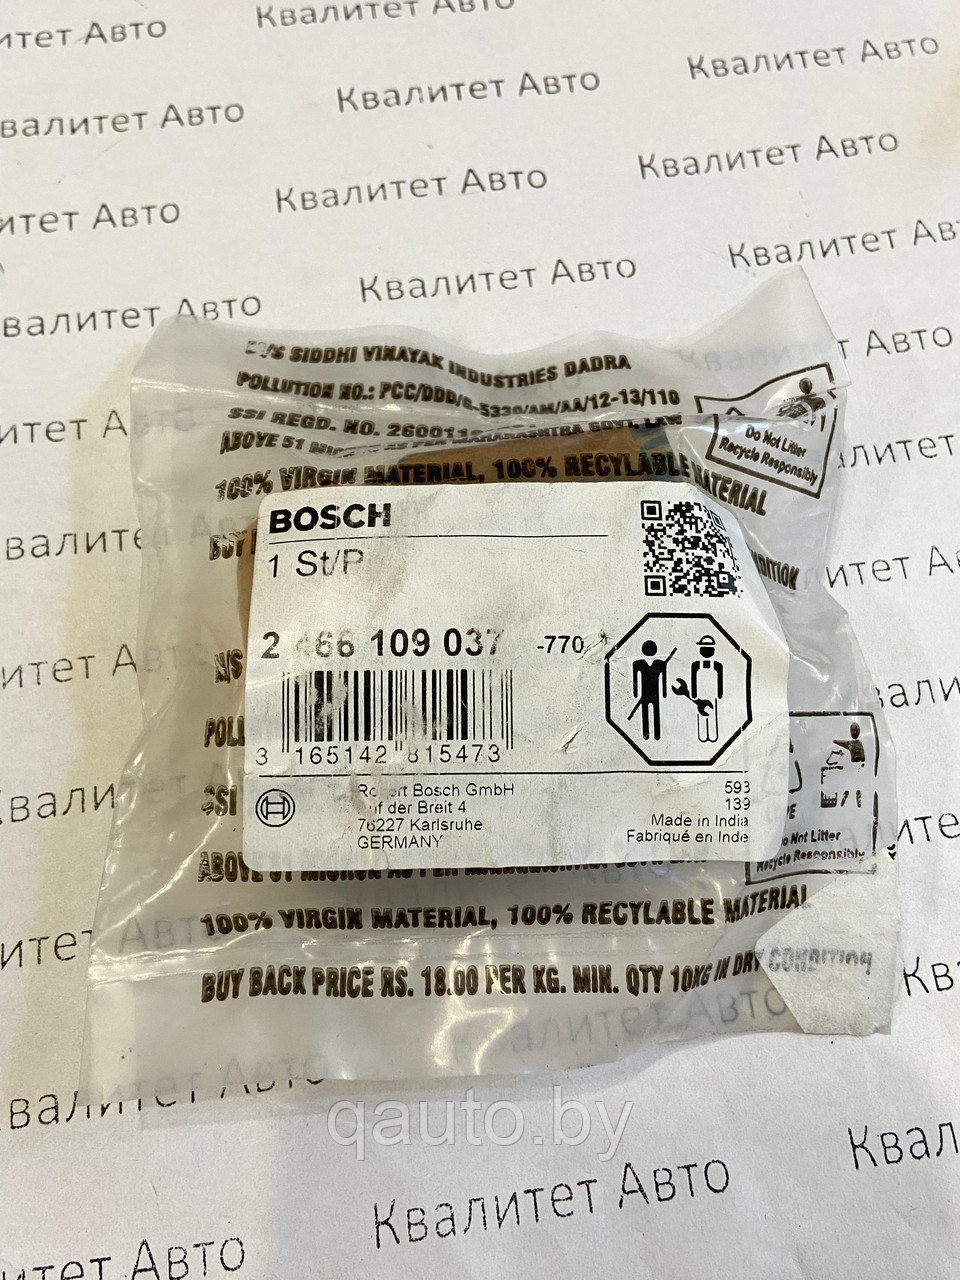 Волновая шайба Bosch 2466109037 VW 2.5L